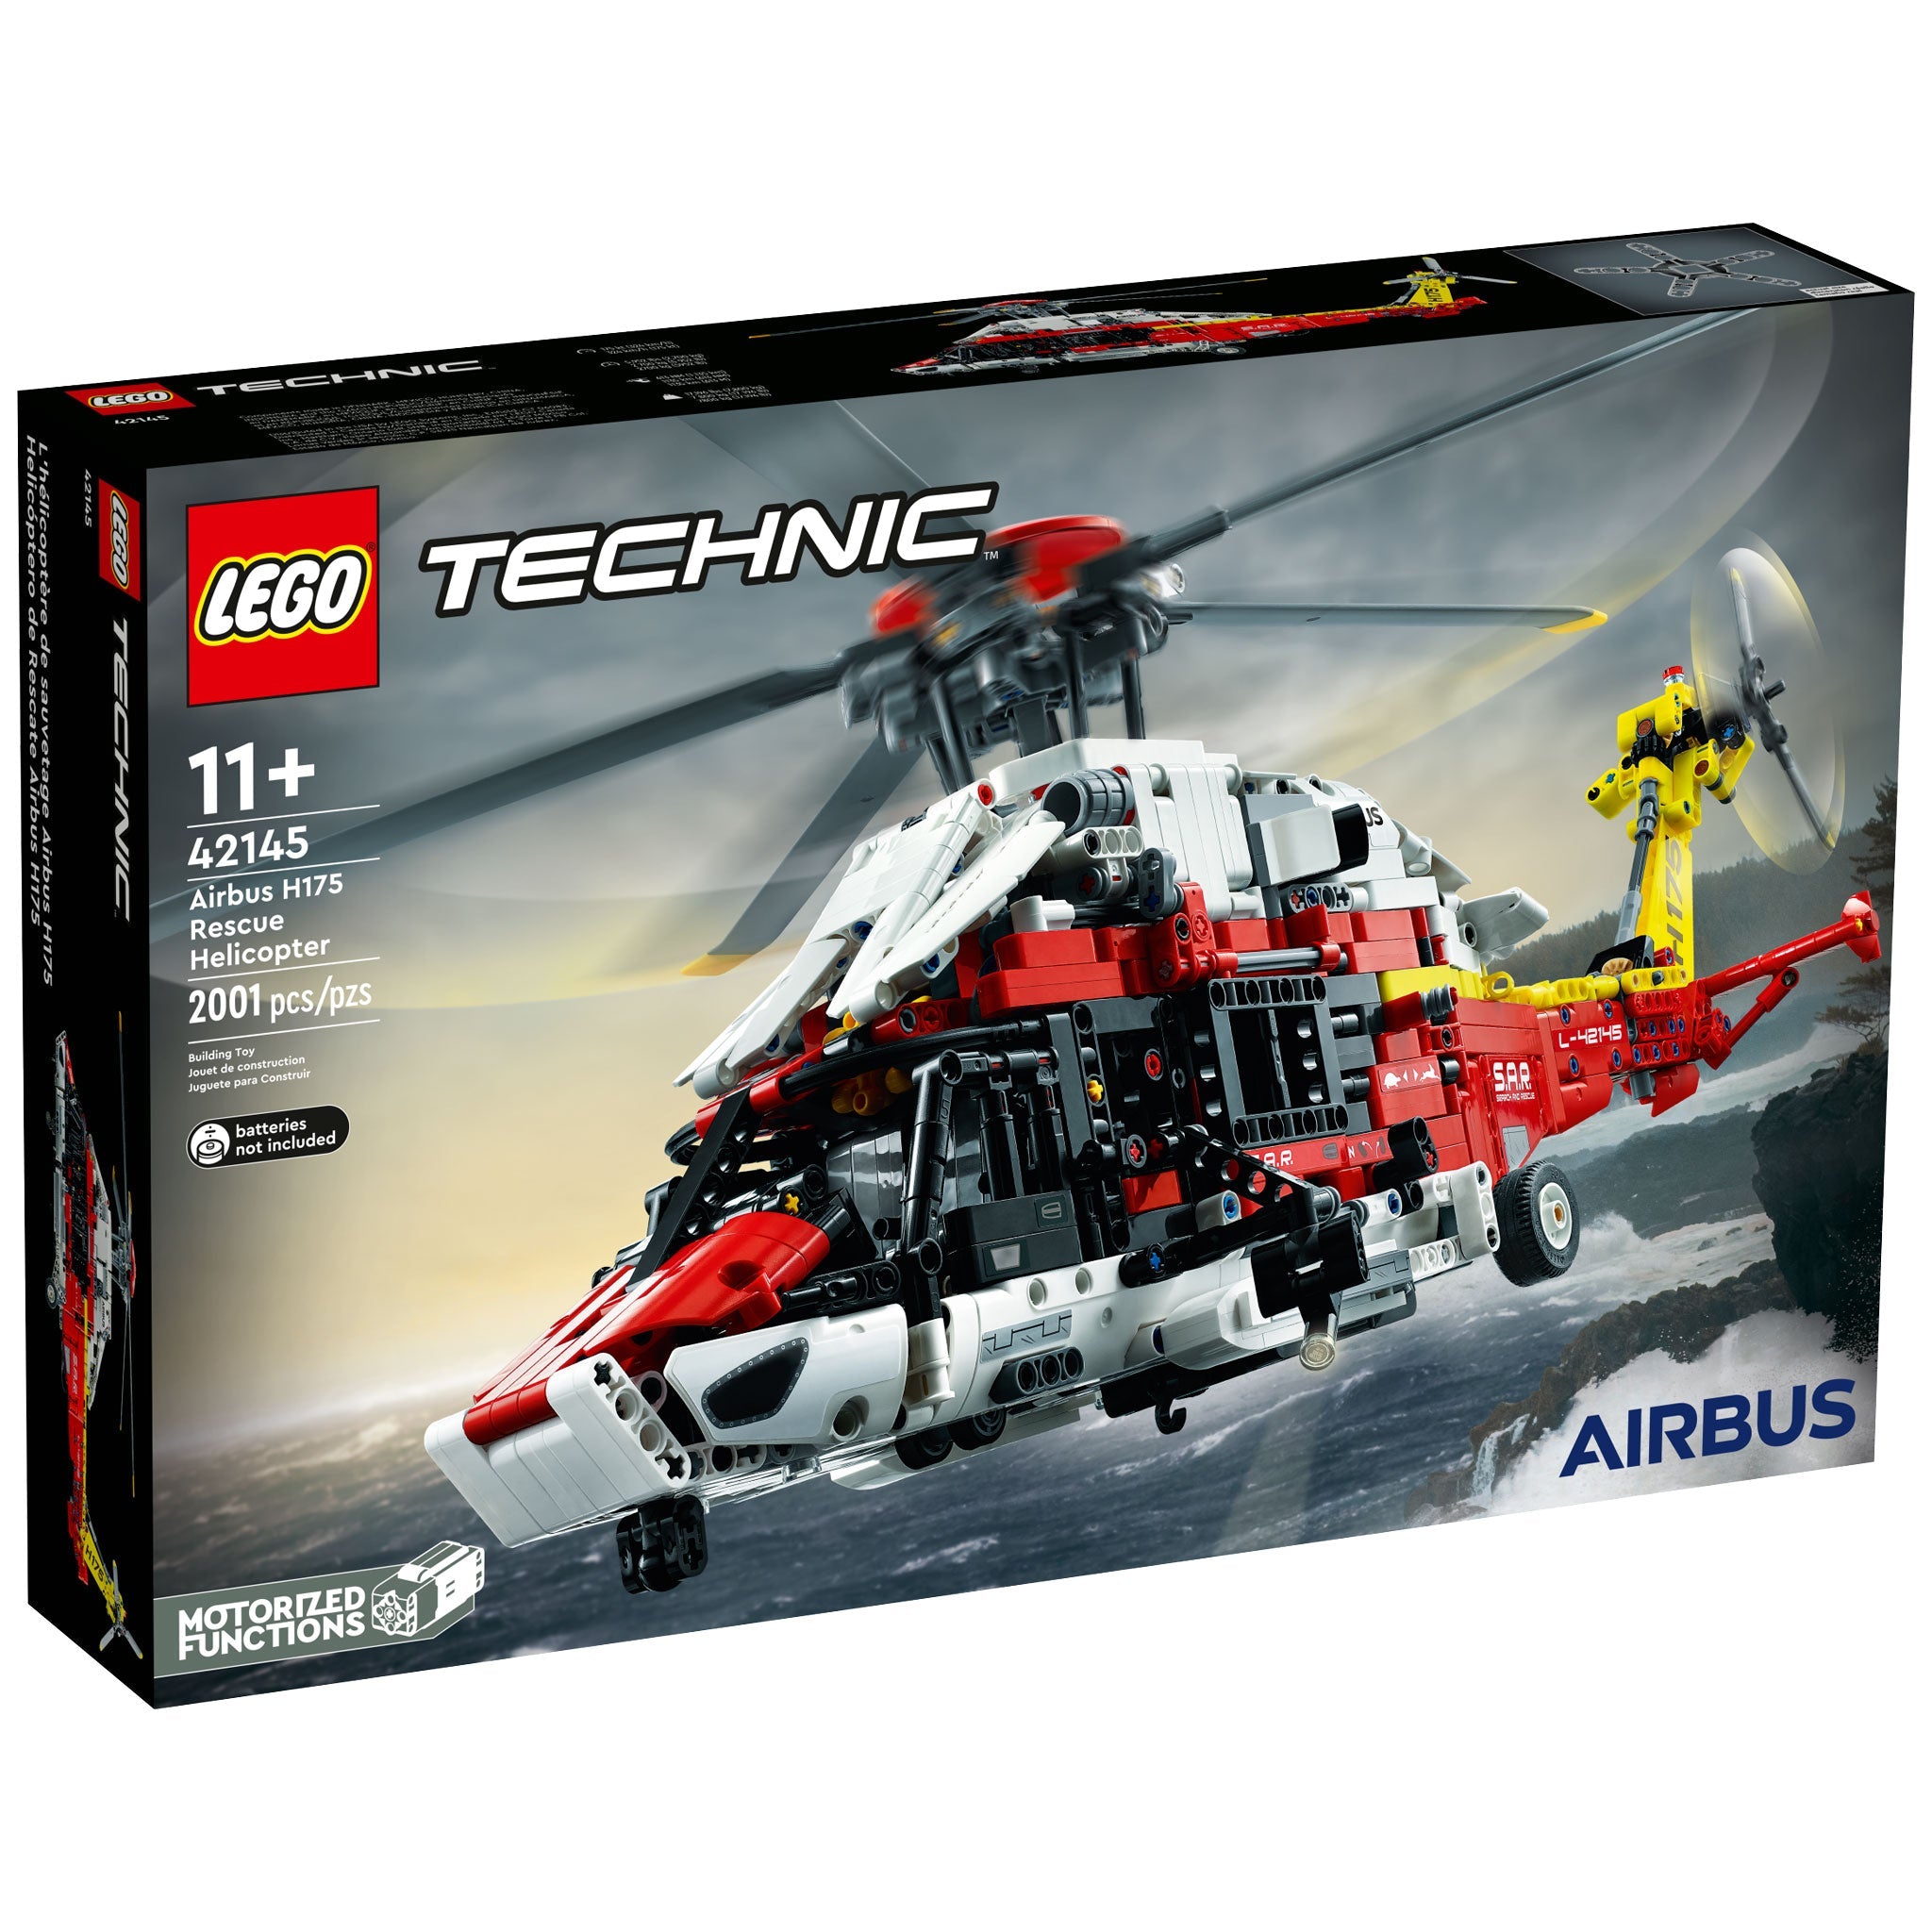 LEGO Technic Airbus H175 Rettungshubschrauber (42145) - im GOLDSTIEN.SHOP verfügbar mit Gratisversand ab Schweizer Lager! (5702017160641)